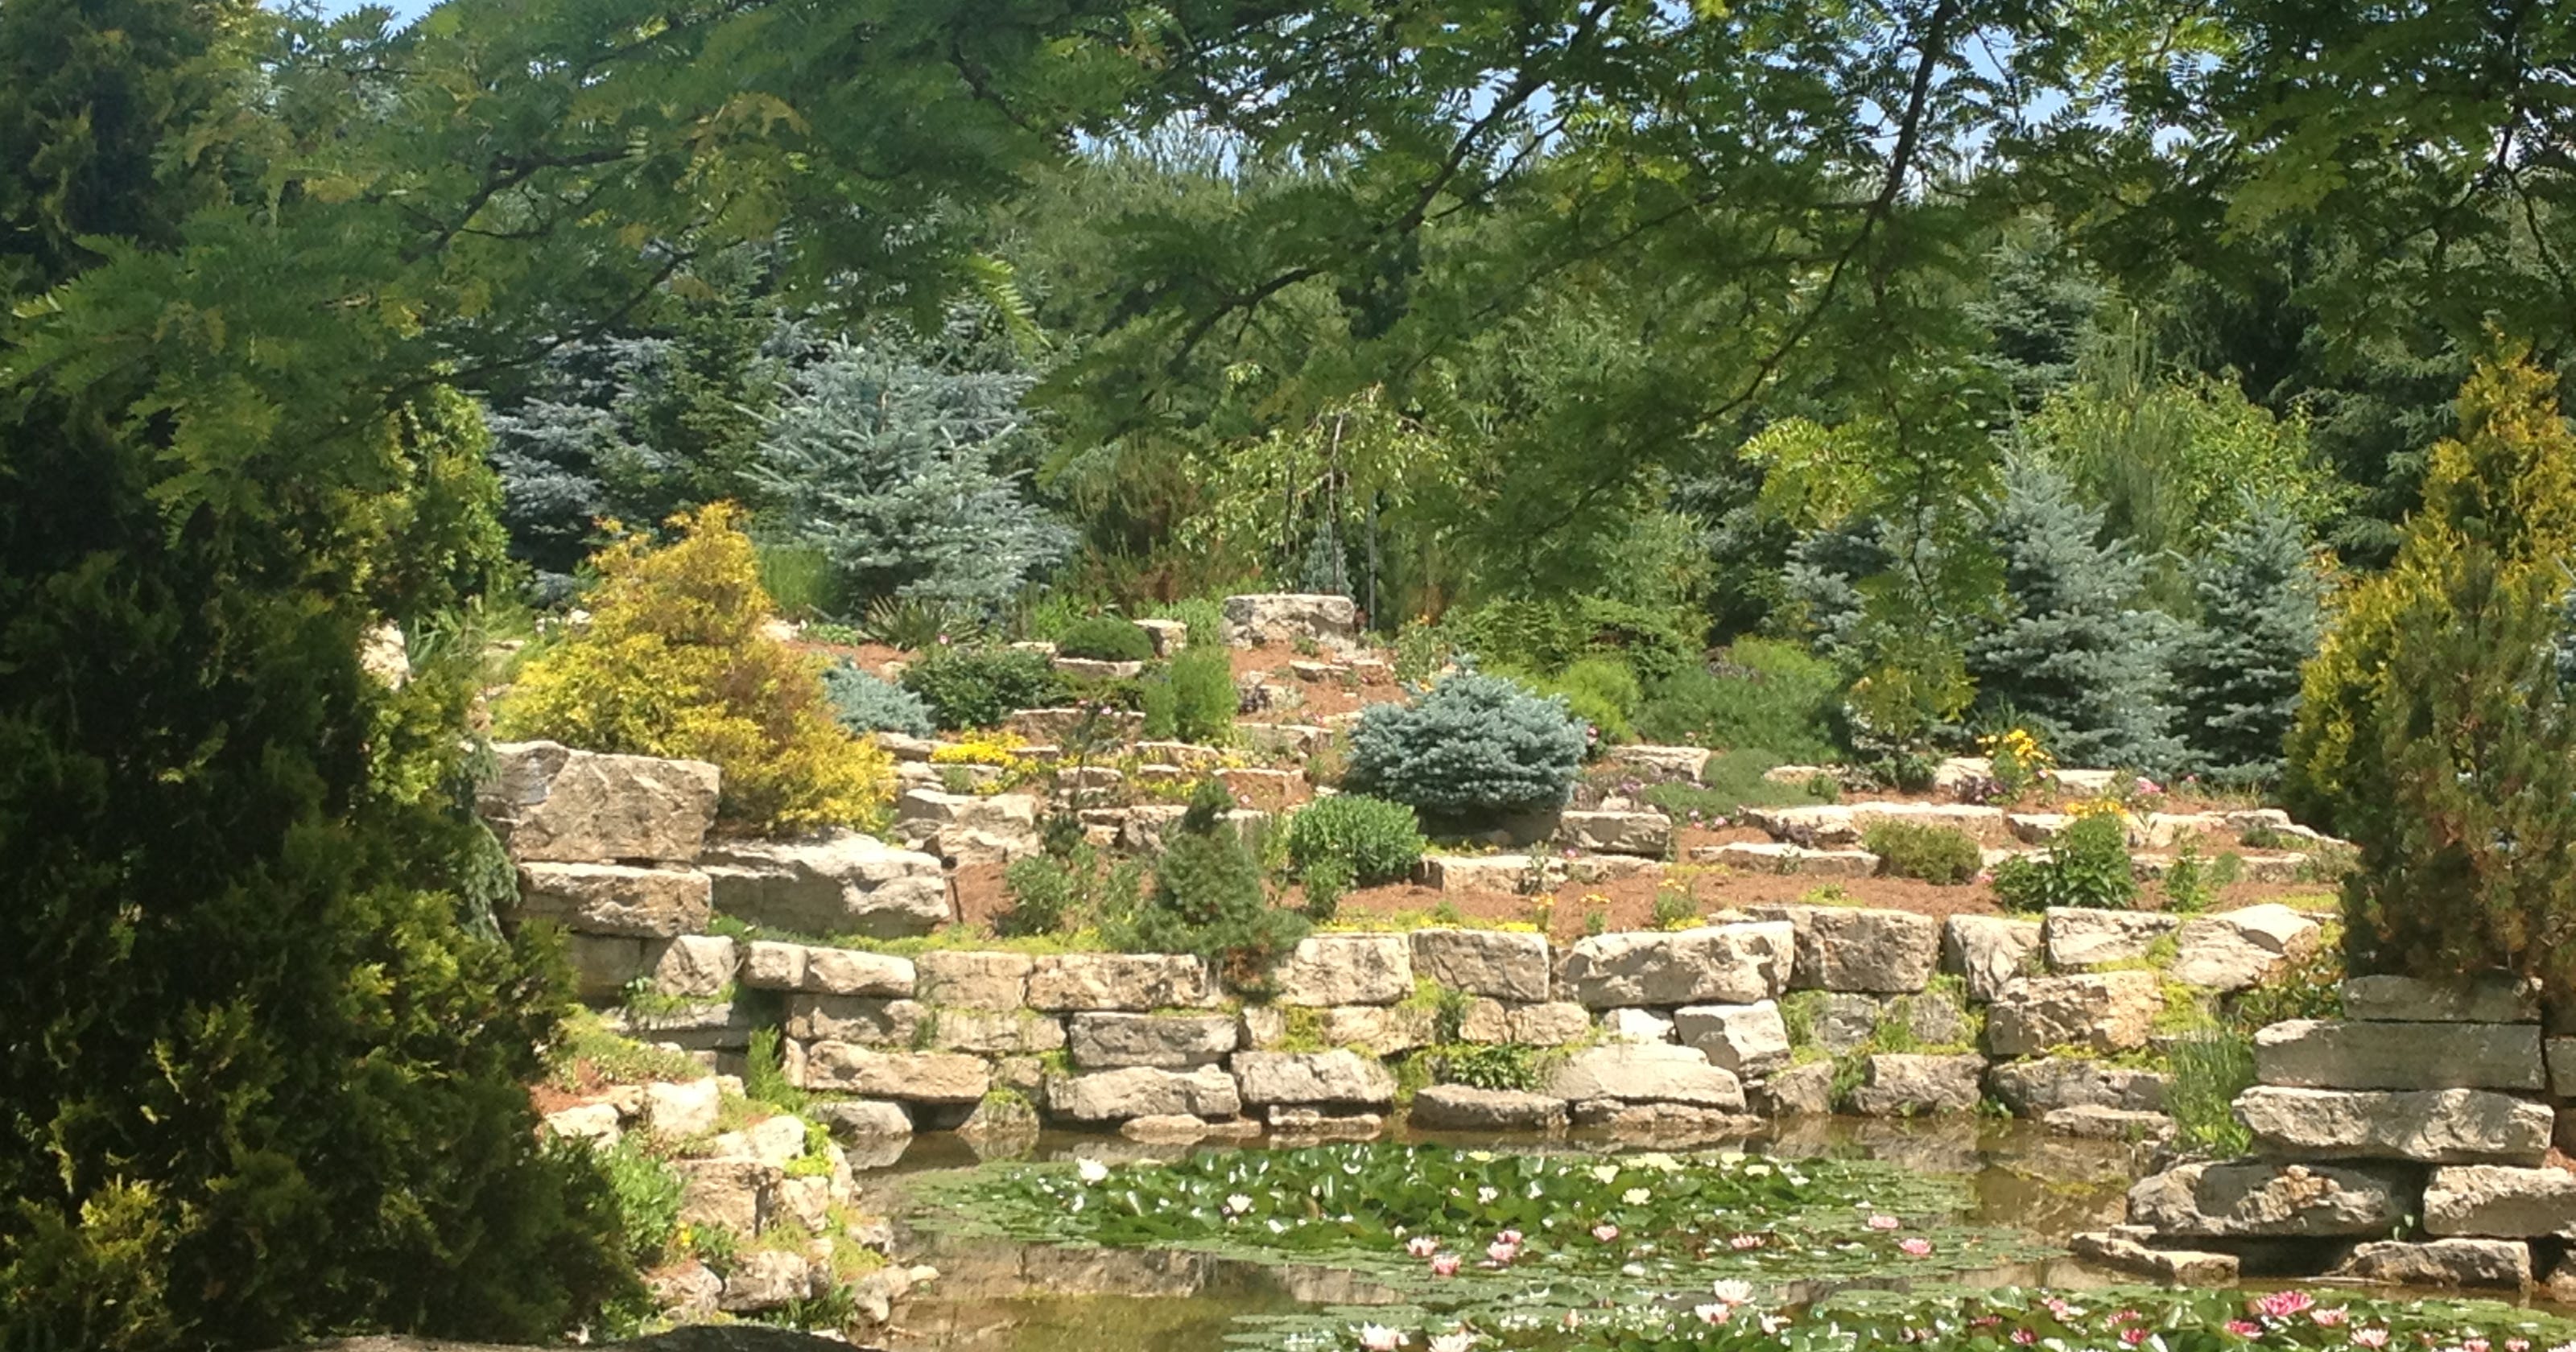 Garden Walk Puts Seven Fox Cities Gardens On Display